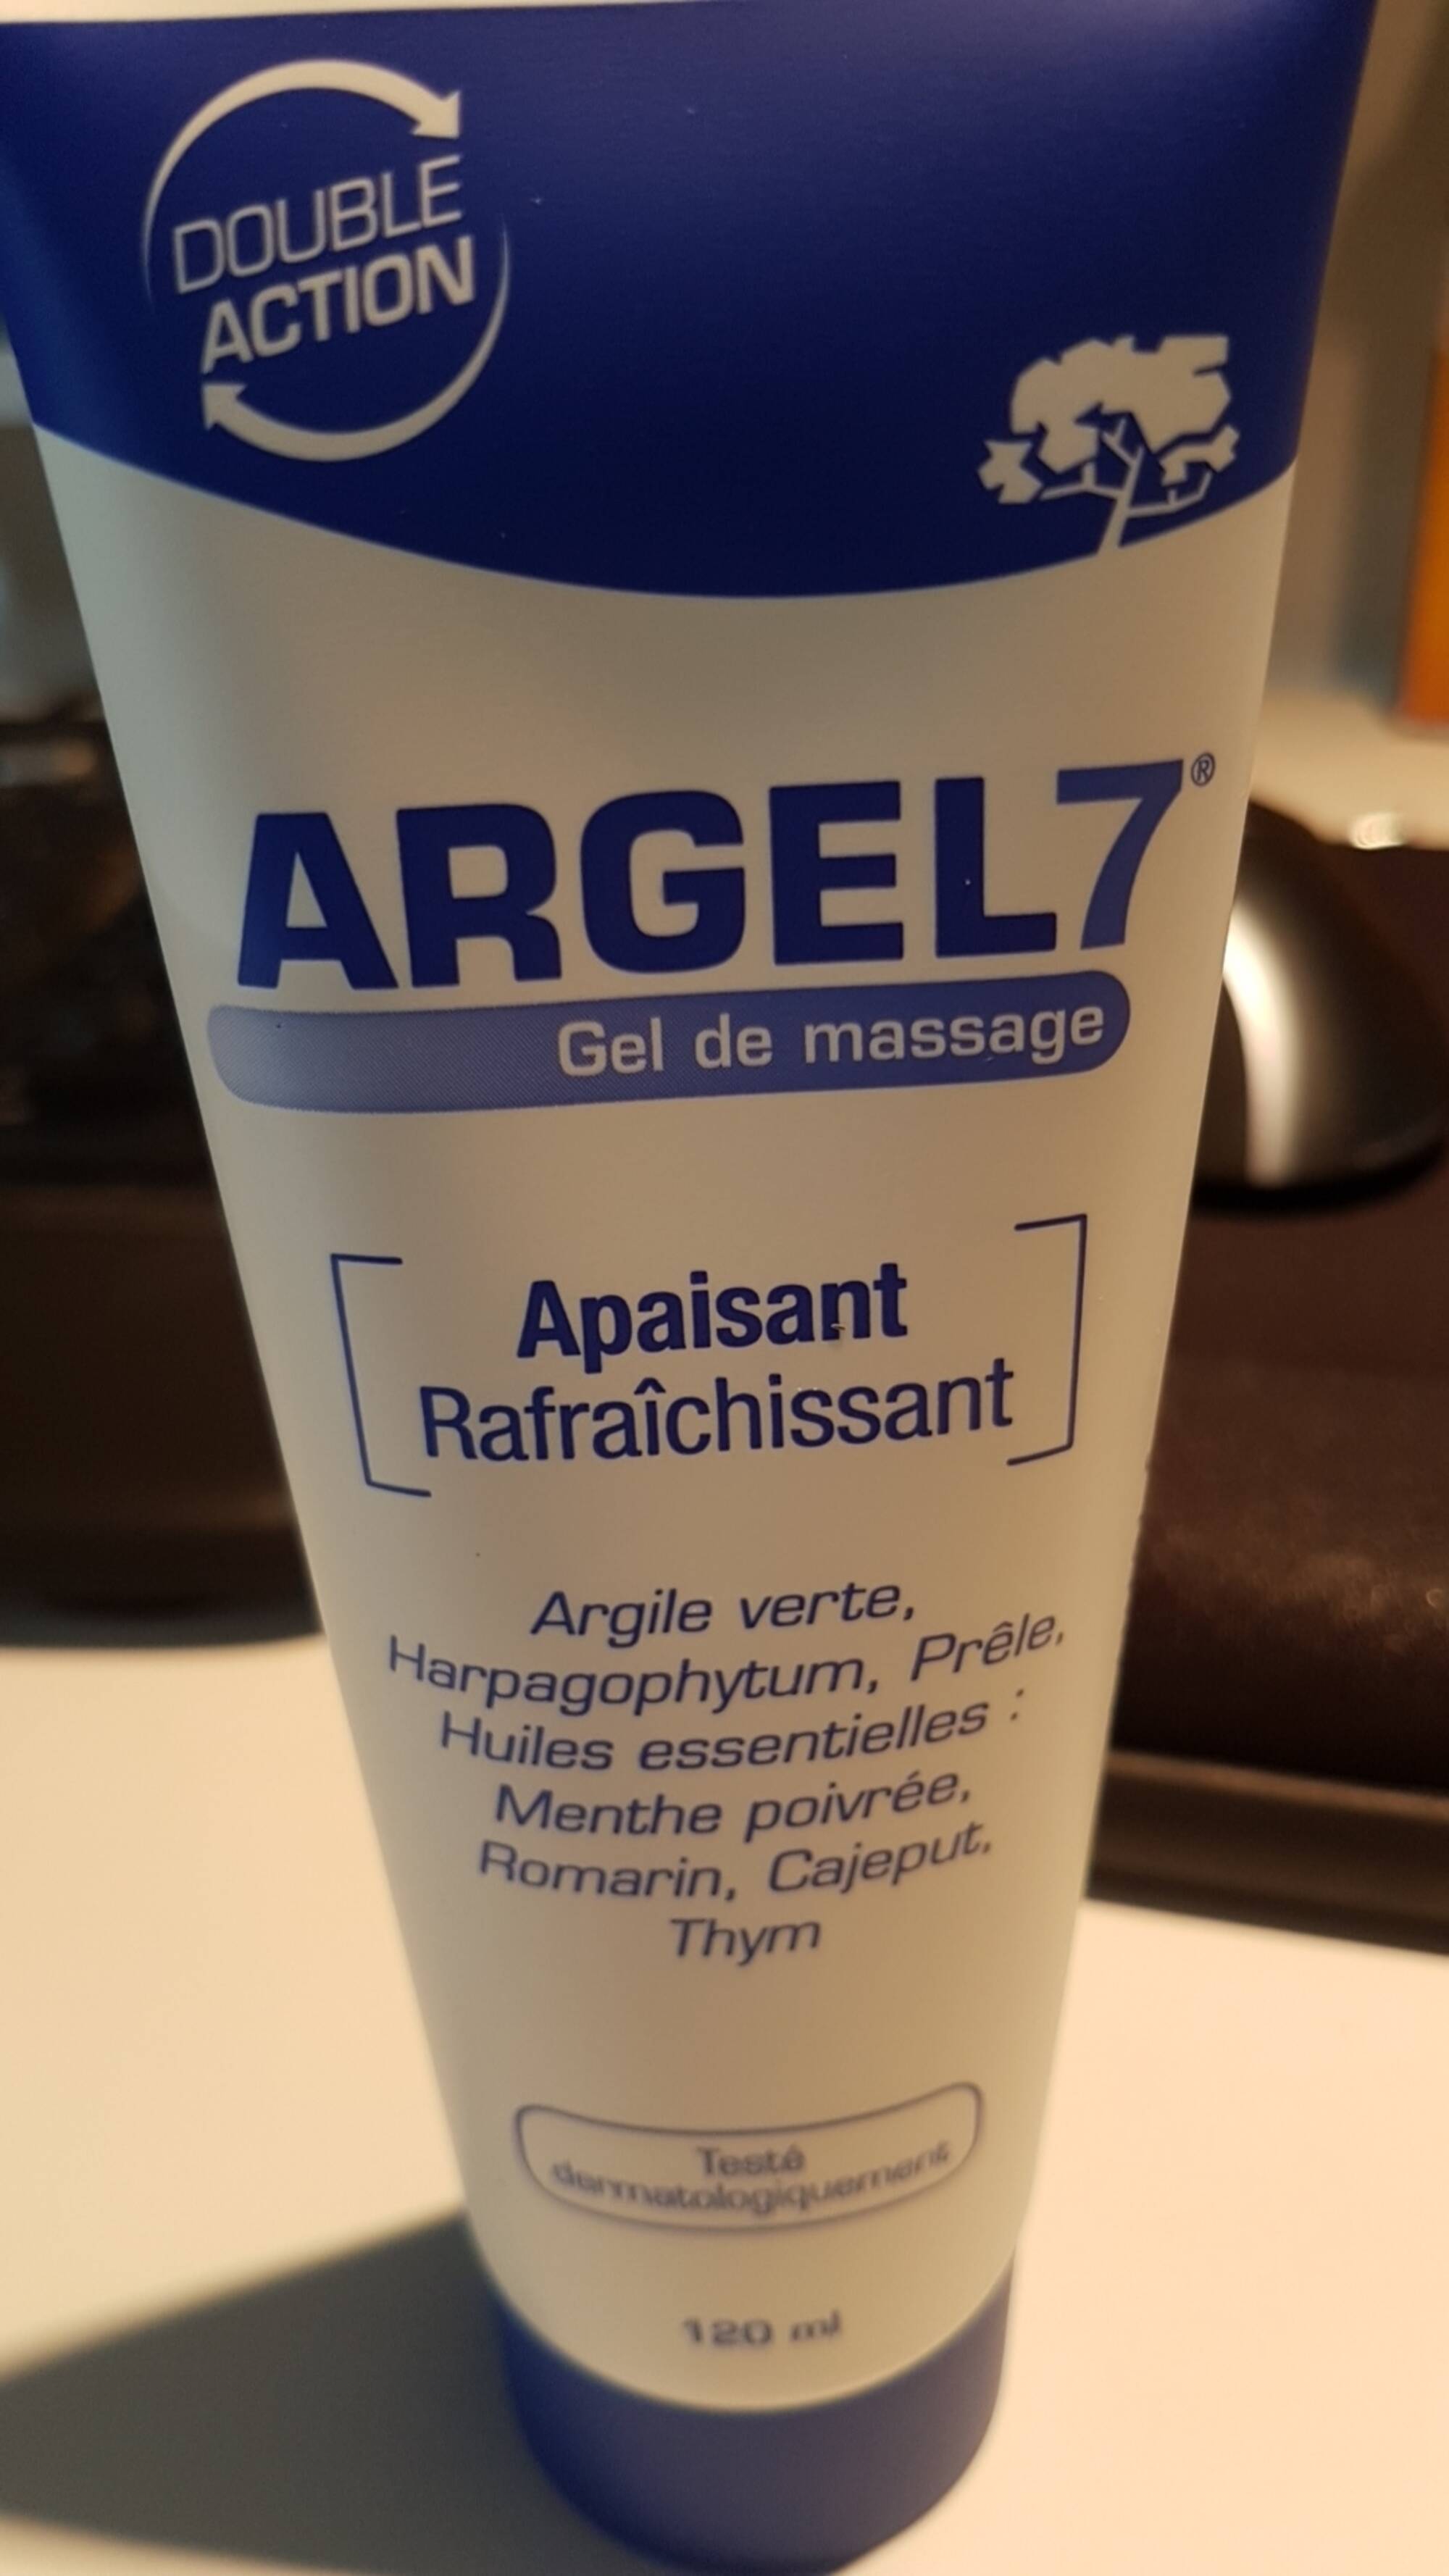 ARGEL 7 - Apaisant rafraîchissant - Gel de massage